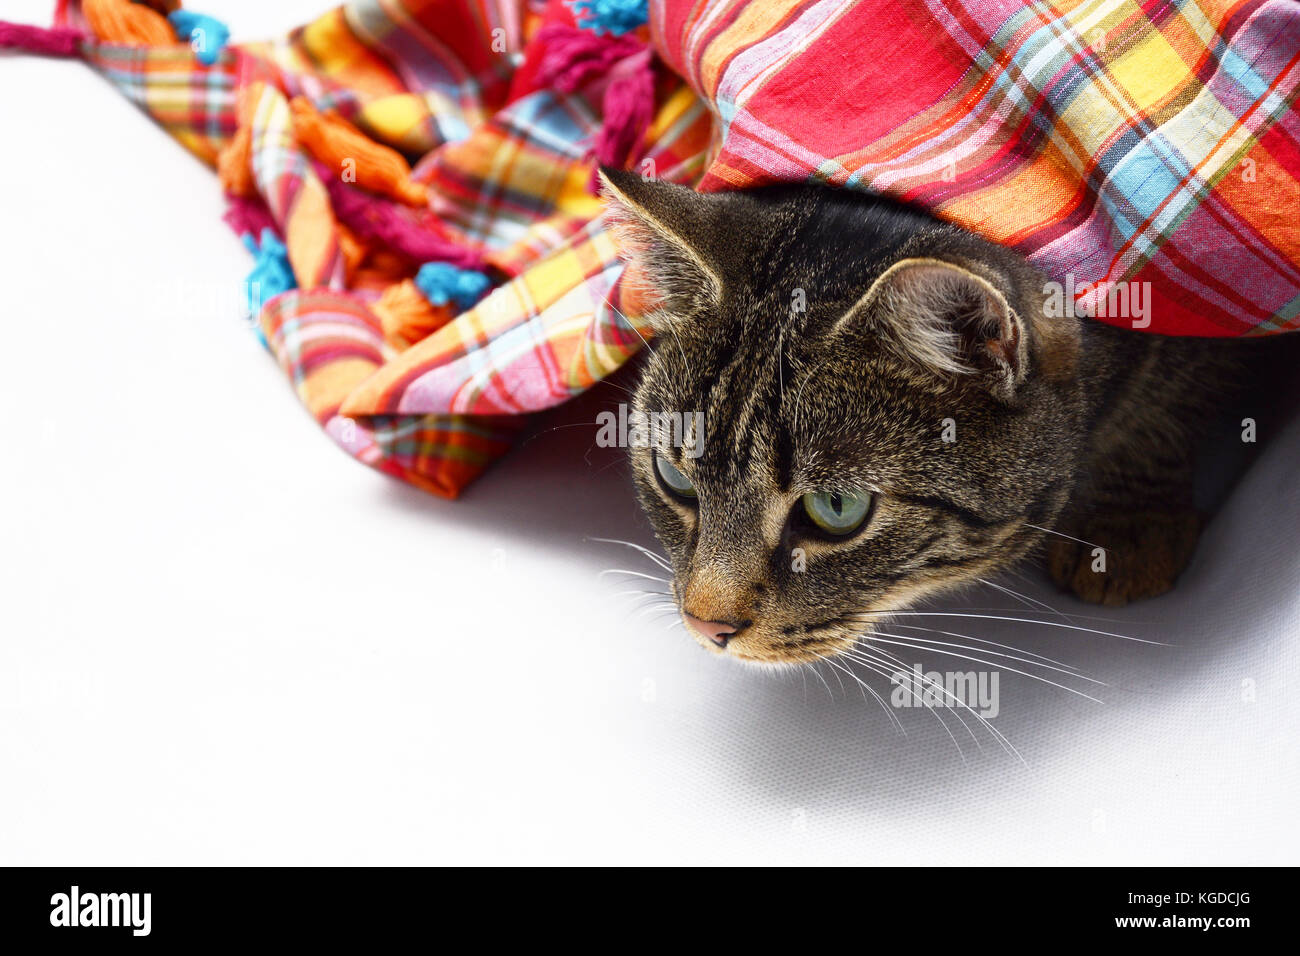 Katze unter einem bunten Schal lauern - Platz für Text Stockfoto